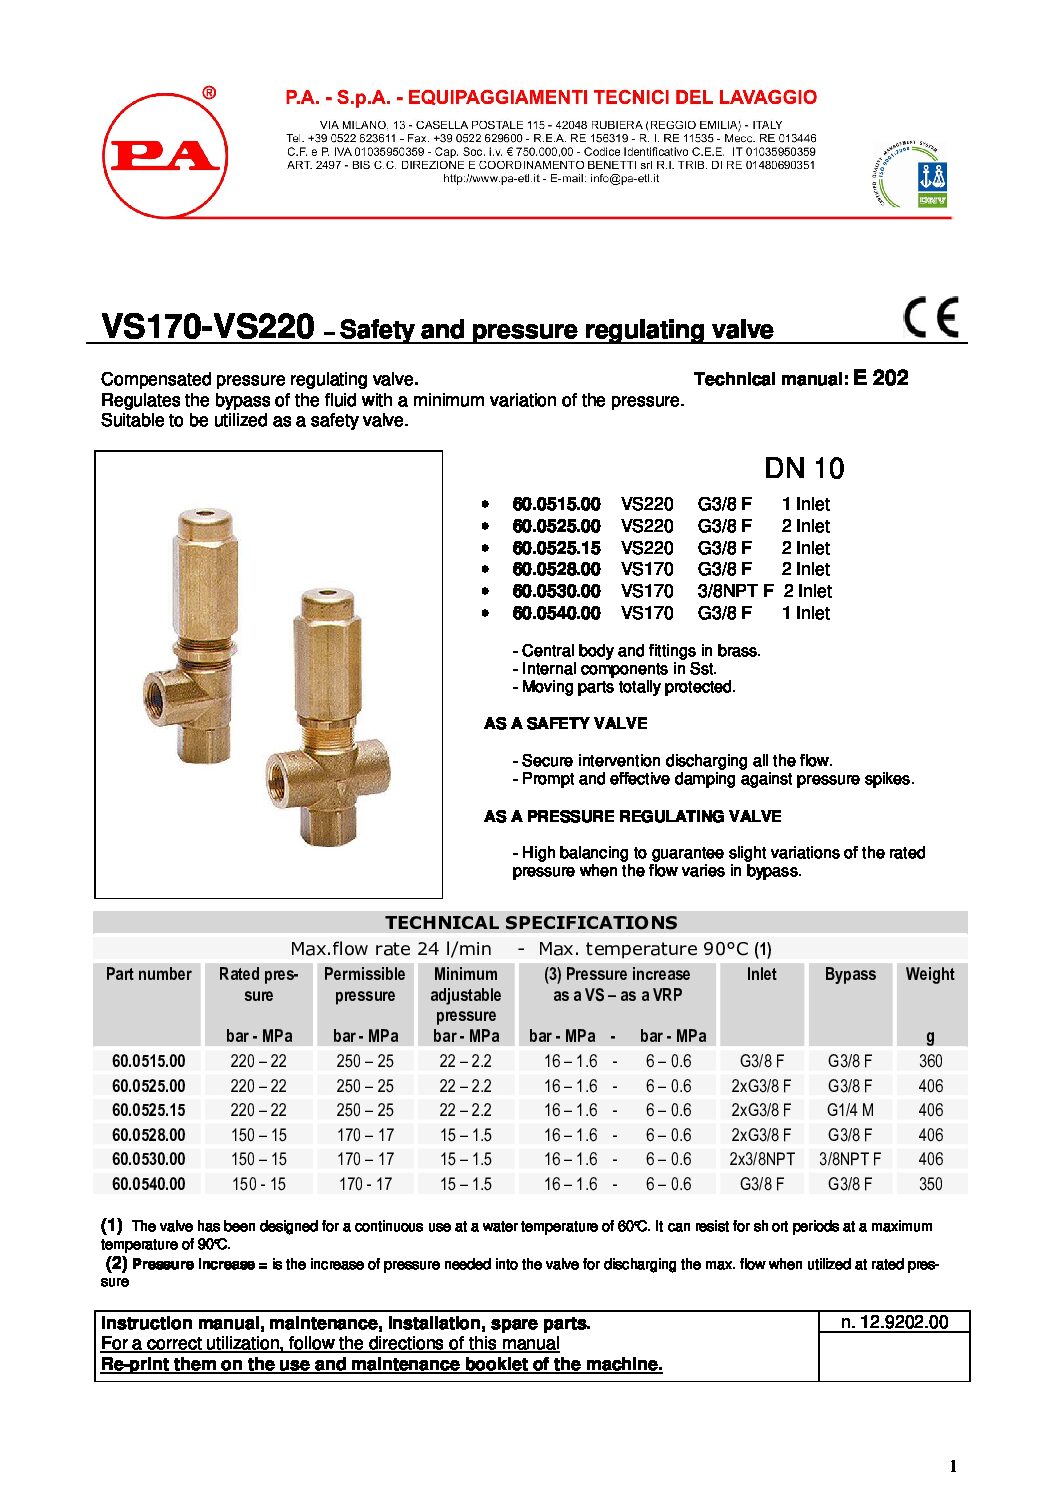 PA VS200/180 safety valve technical manual